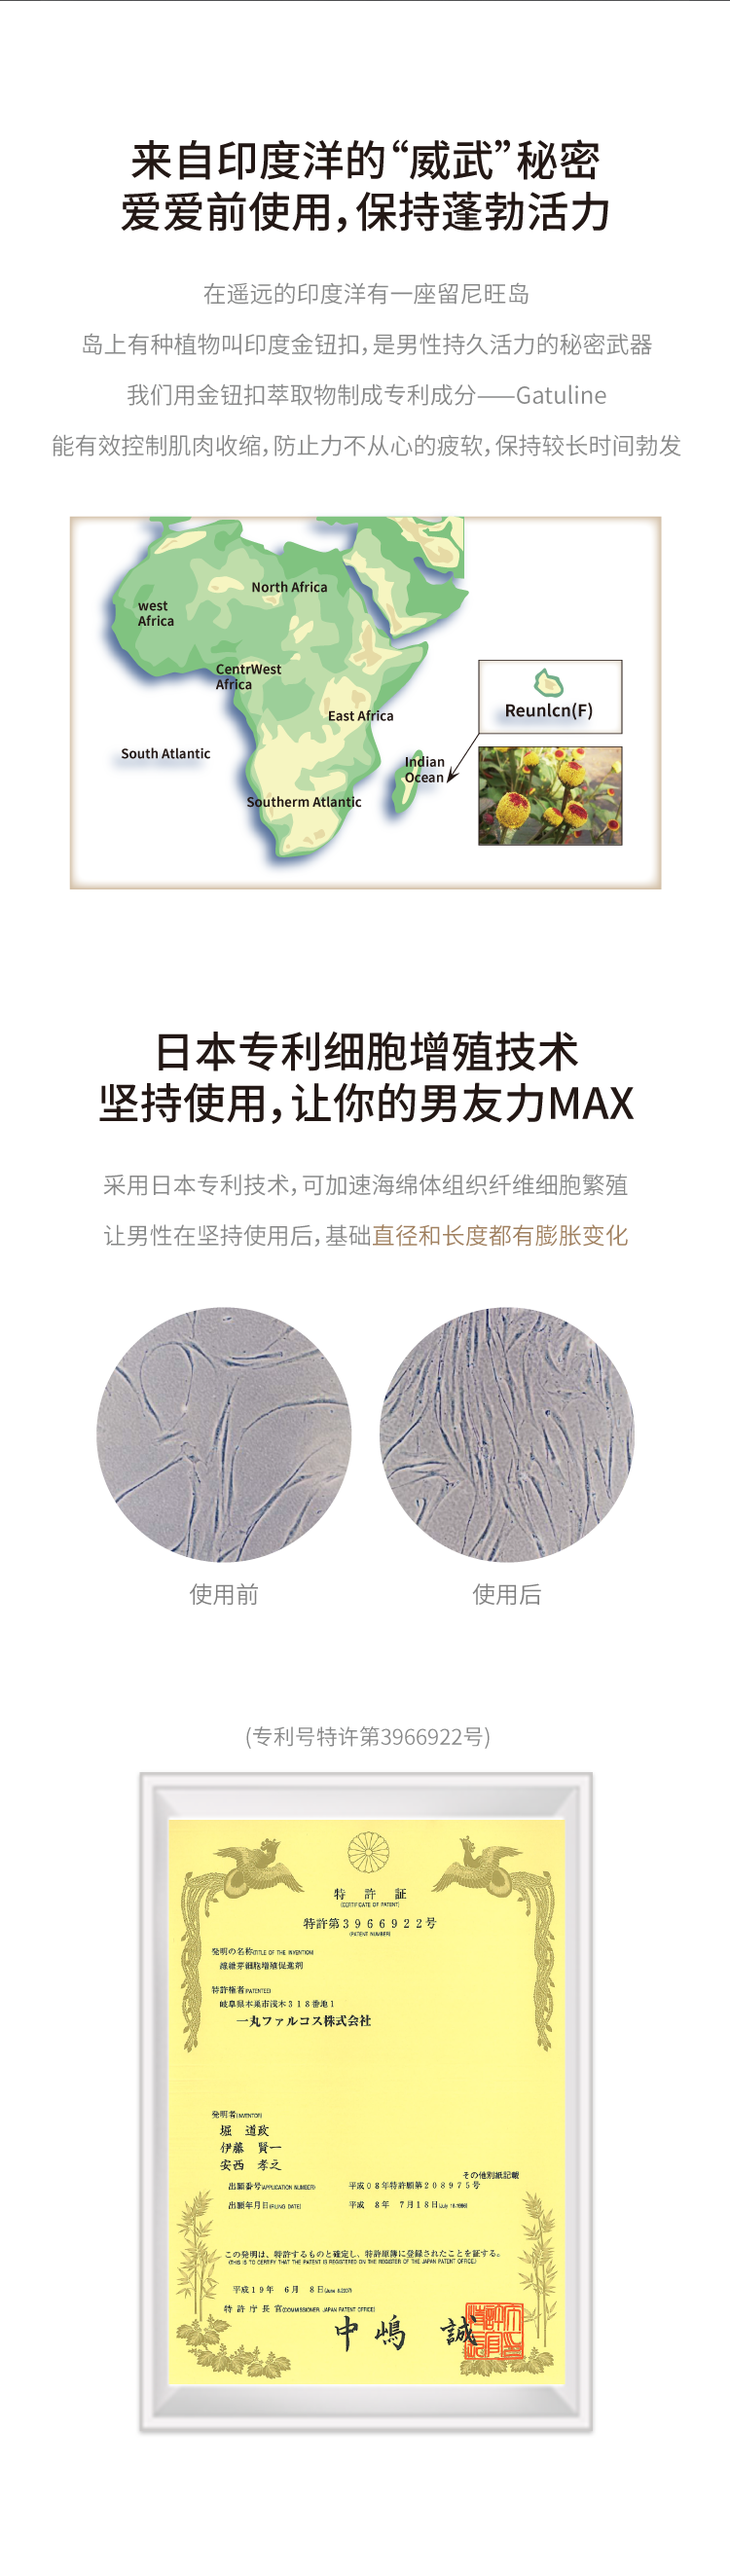 【北美直邮】中国网易春风MAX男士增大按摩精华油 - 30ml